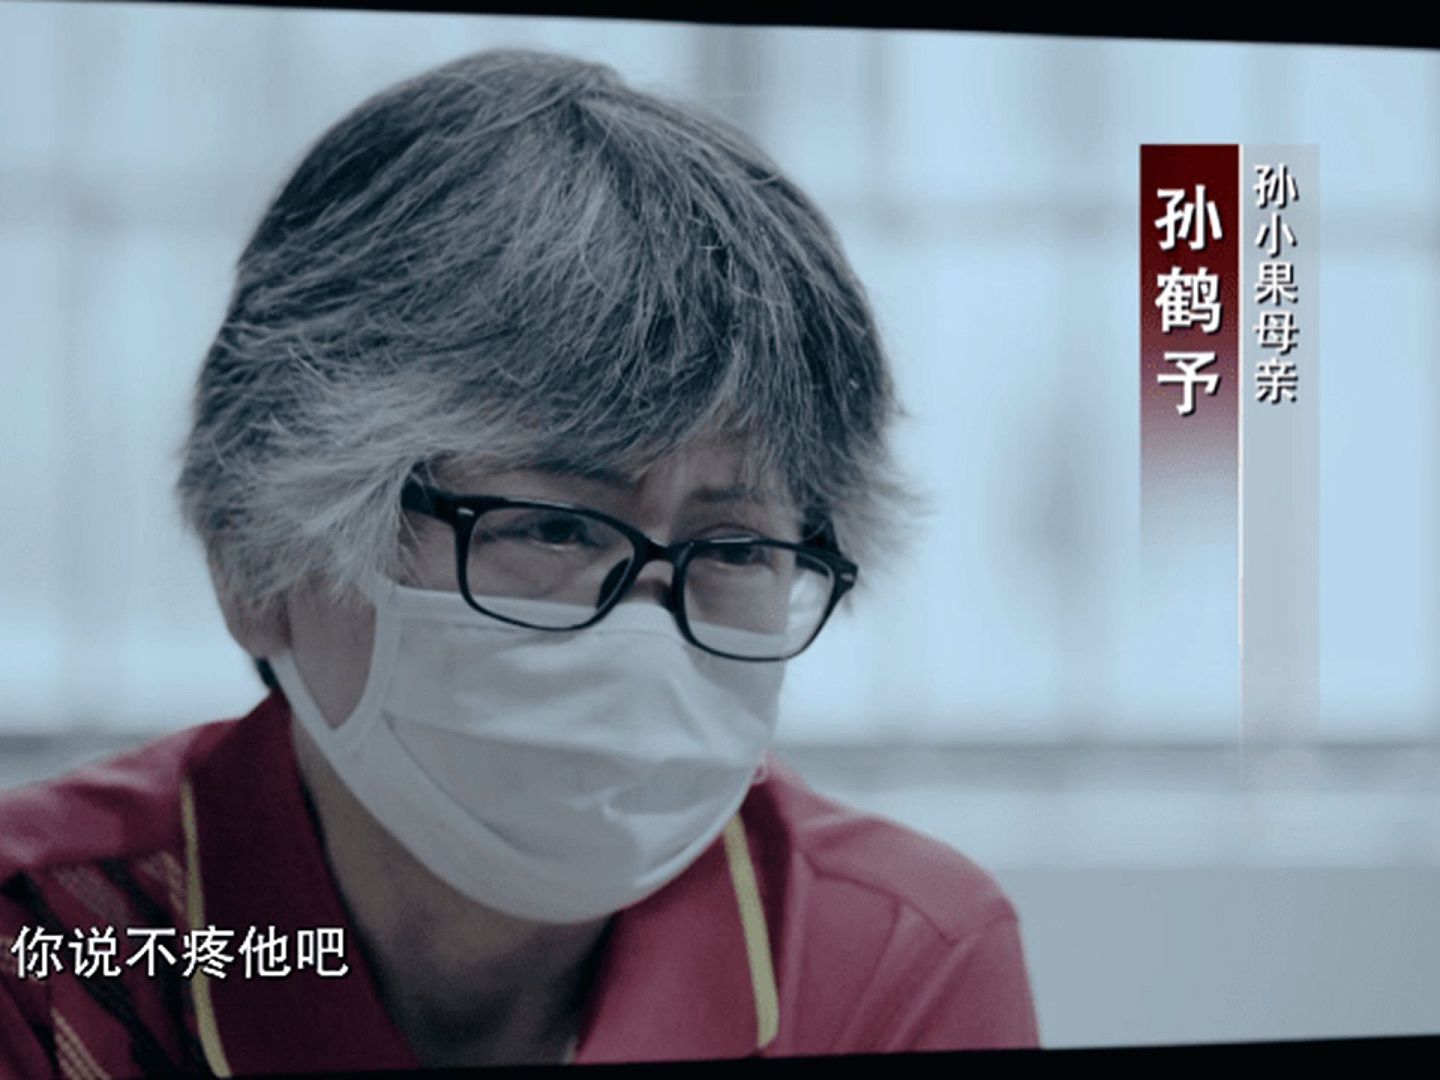 2021年1月22日，中国专题片《正风反腐就在身边》播出第二集《守护民生》，其中孙小果母亲首次出境披露关于儿子案件背后的细节。（ 中国央视视频截图）